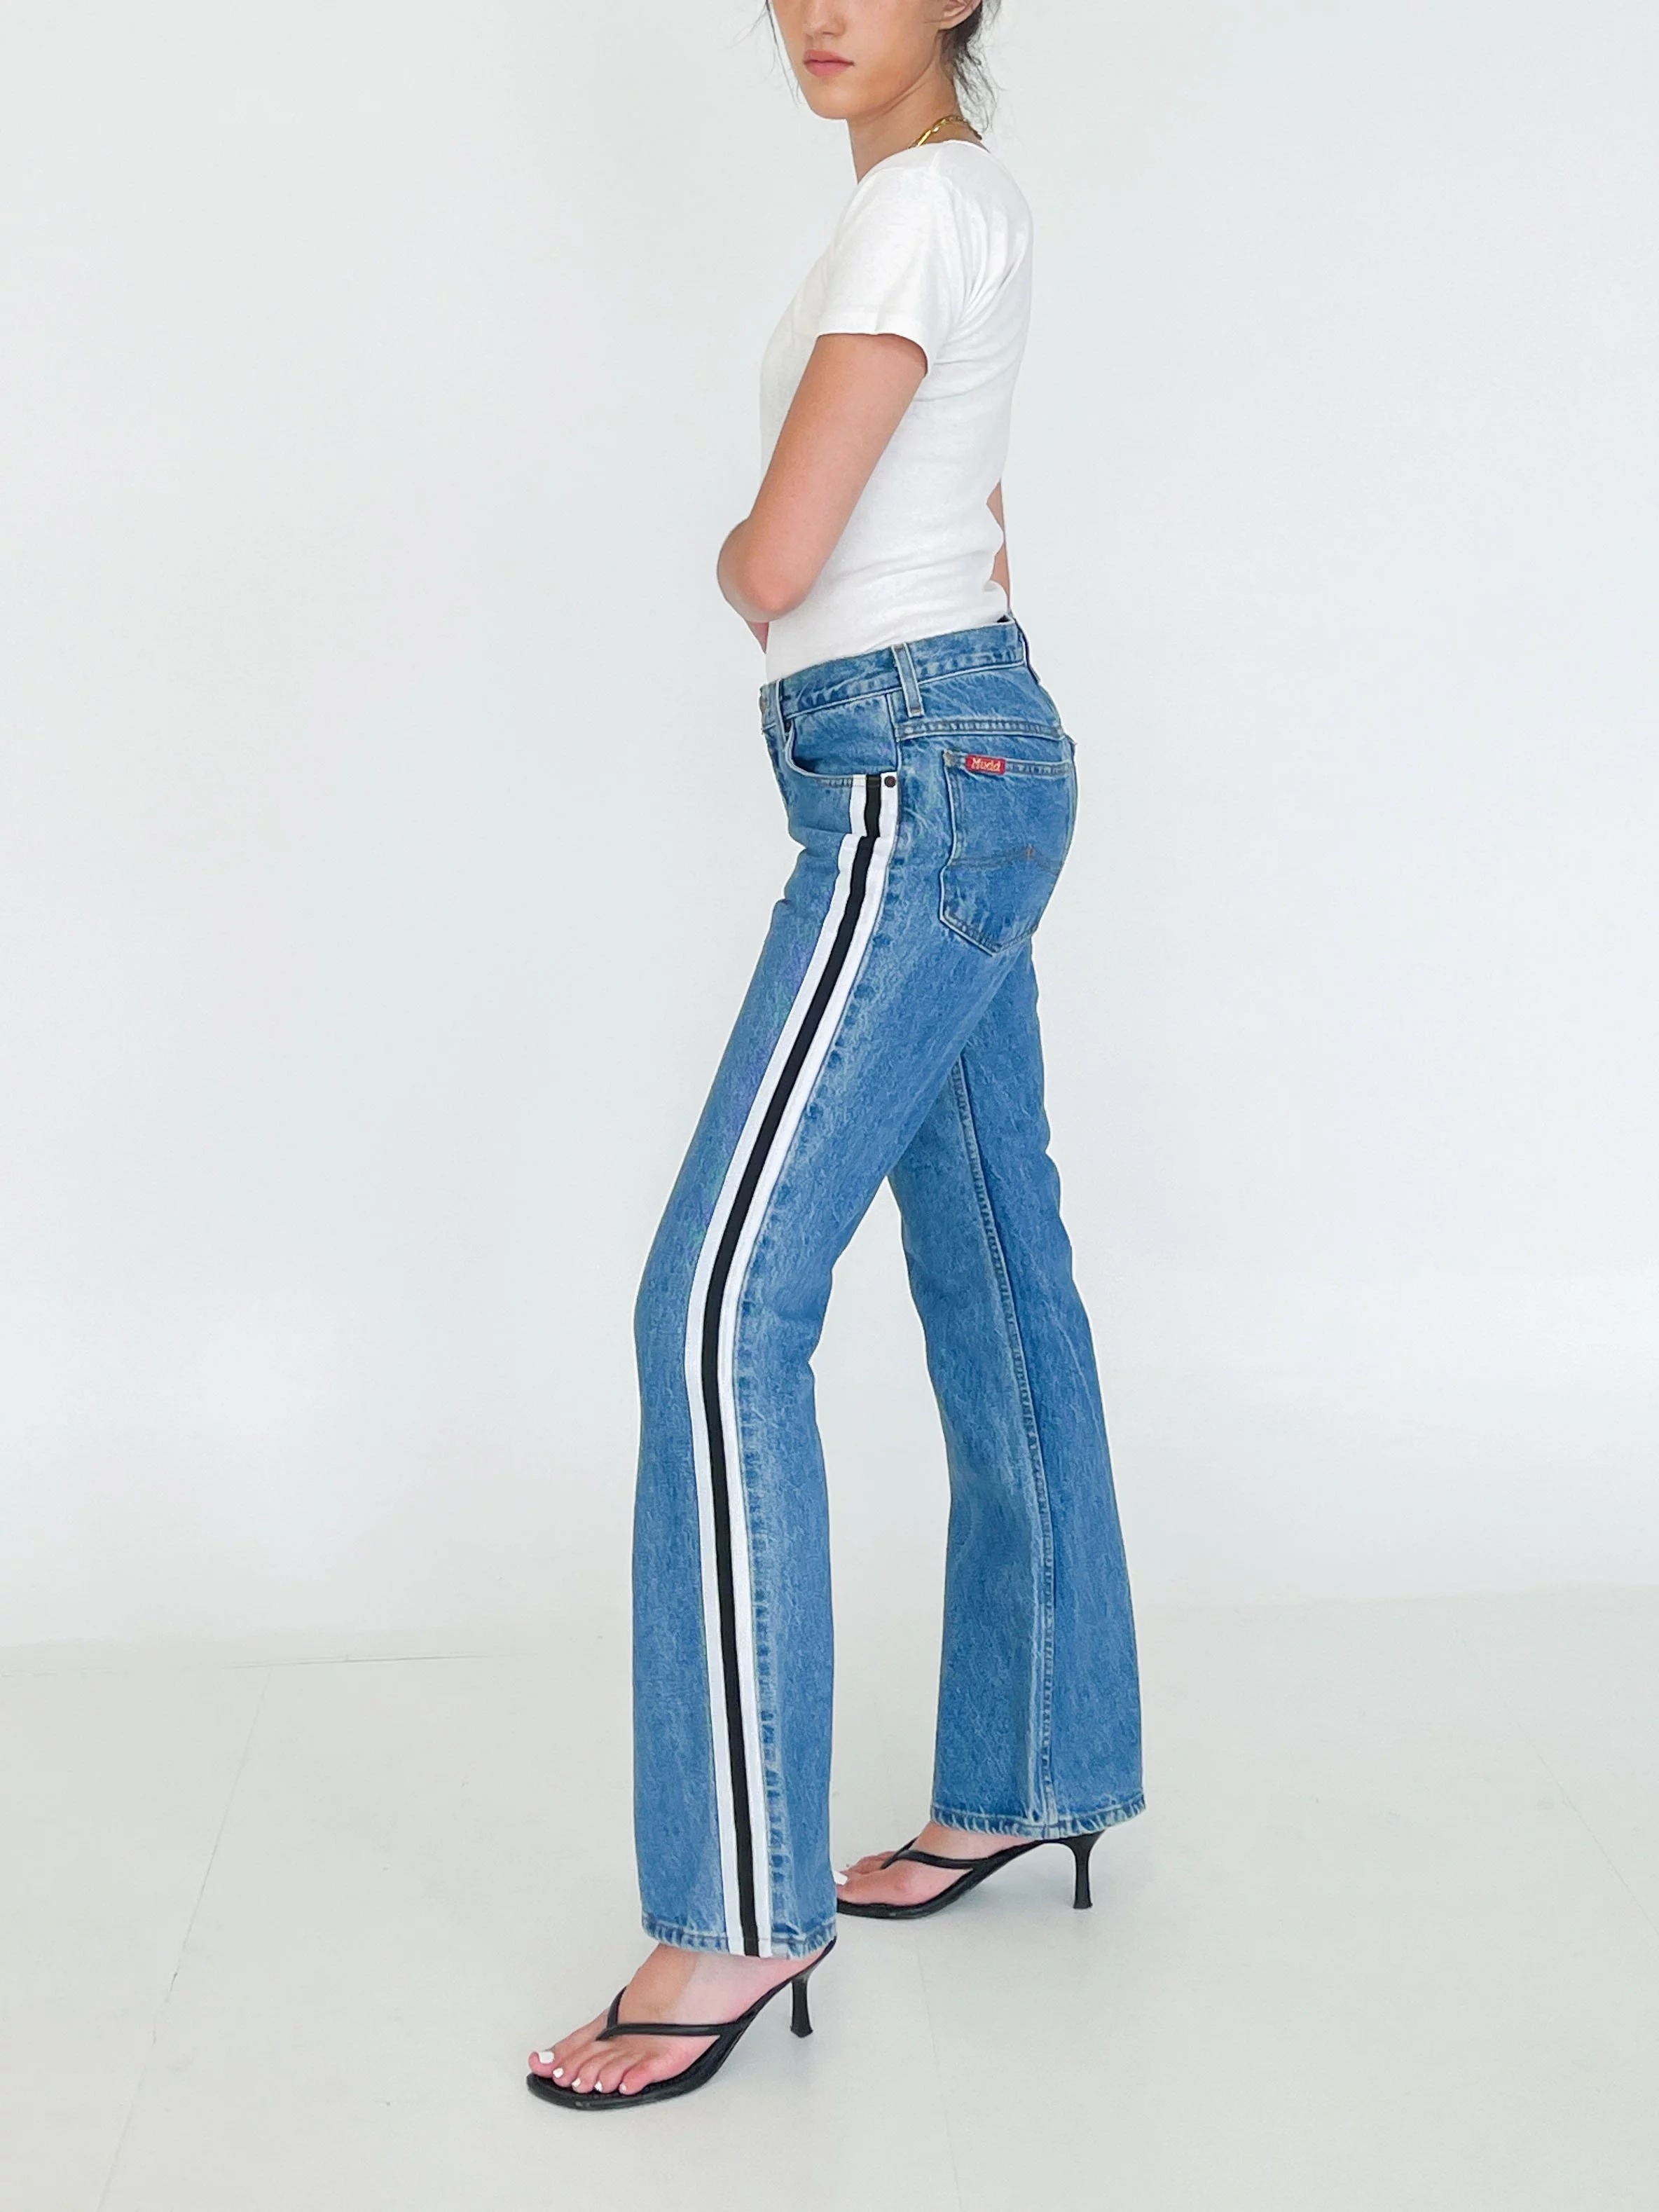 Антитрендовые джинсы, которым не место в гардеробе современной женщины: фото